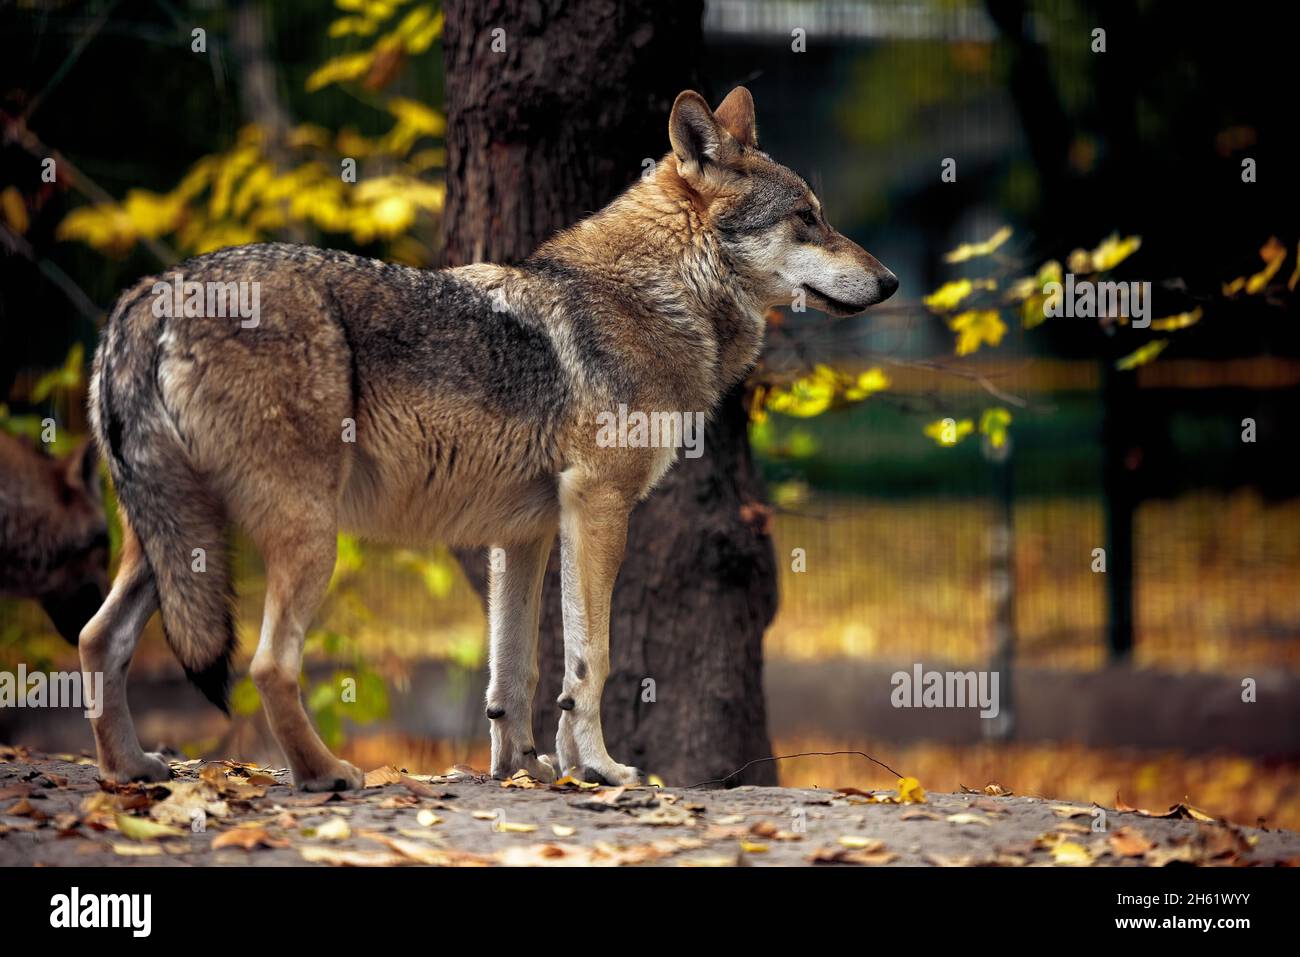 Porträt eines grauen Wolfes Canis Lupus, ein Nahaufnahme-Foto eines Raubtieres. Stockfoto